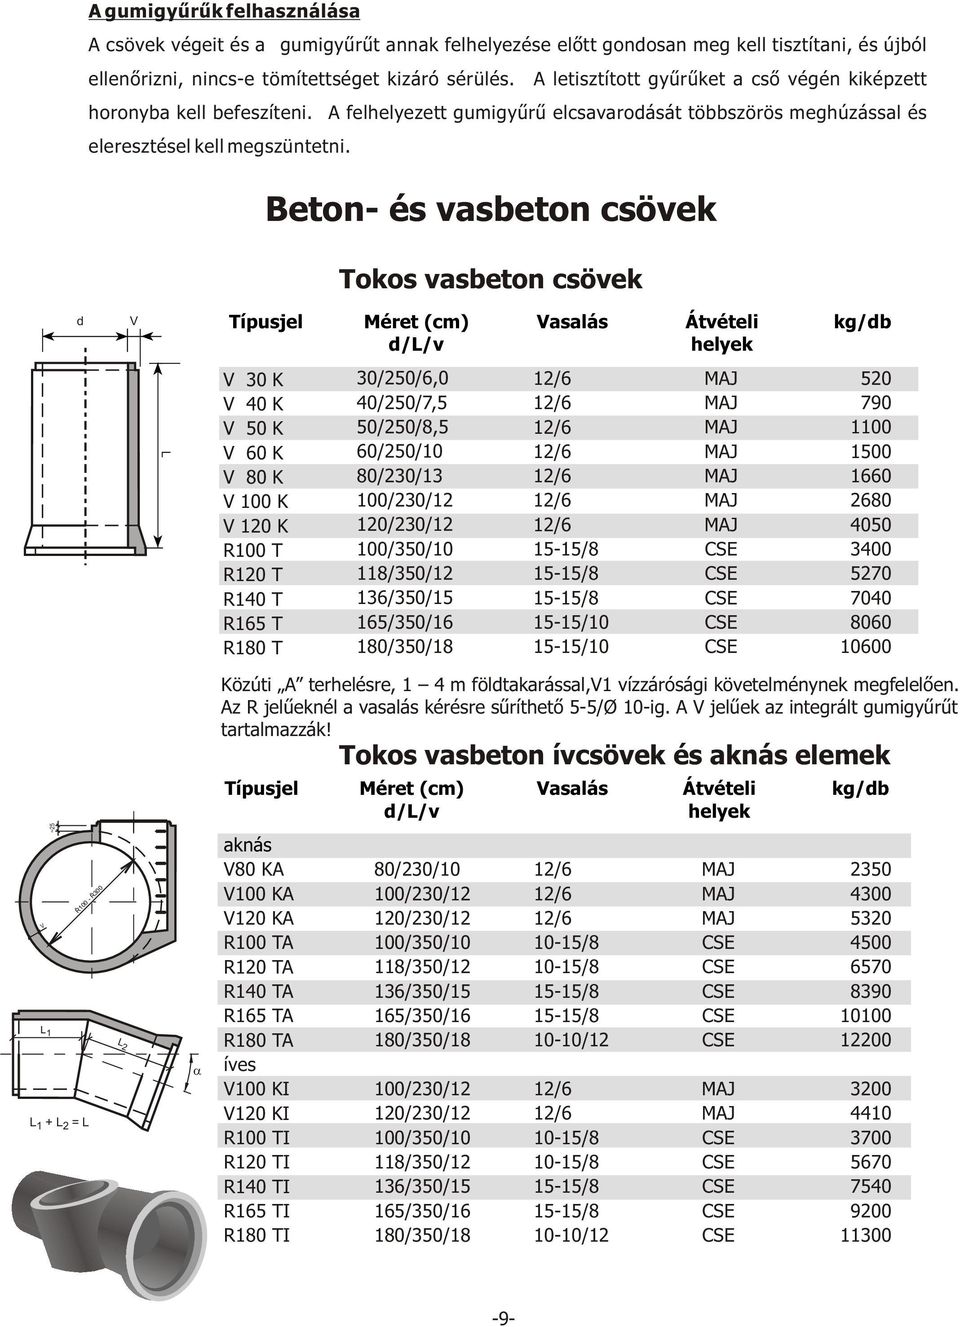 Beton- és vasbeton csövek - PDF Ingyenes letöltés